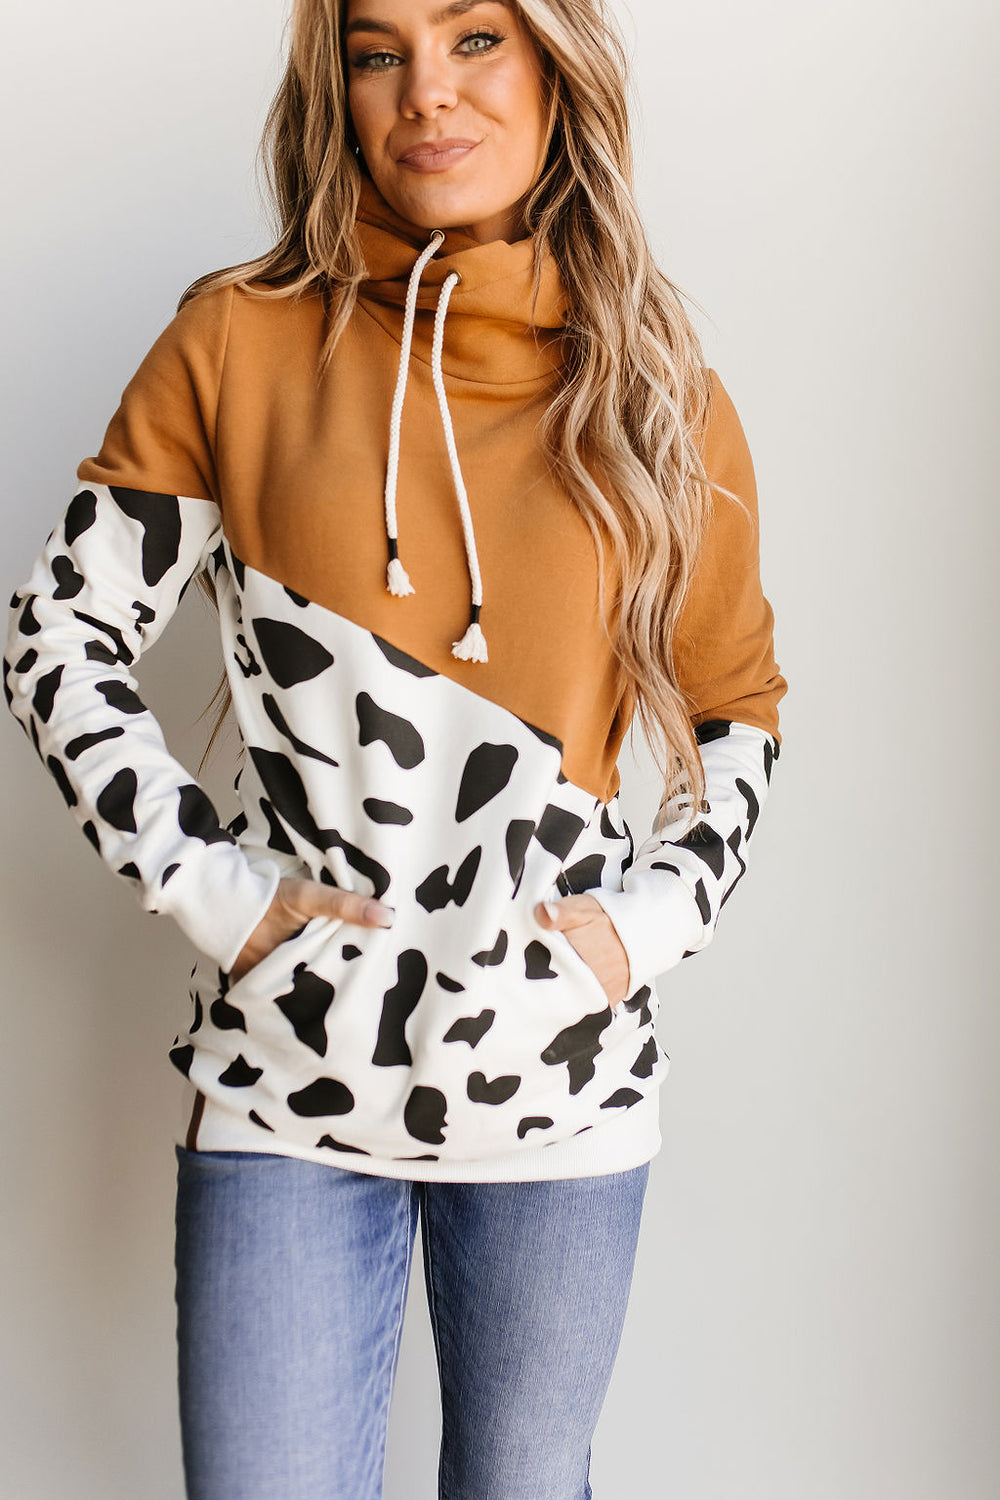 Singlehood Sweatshirt - Yeehaw - Mindy Mae's Marketcomfy cute hoodies